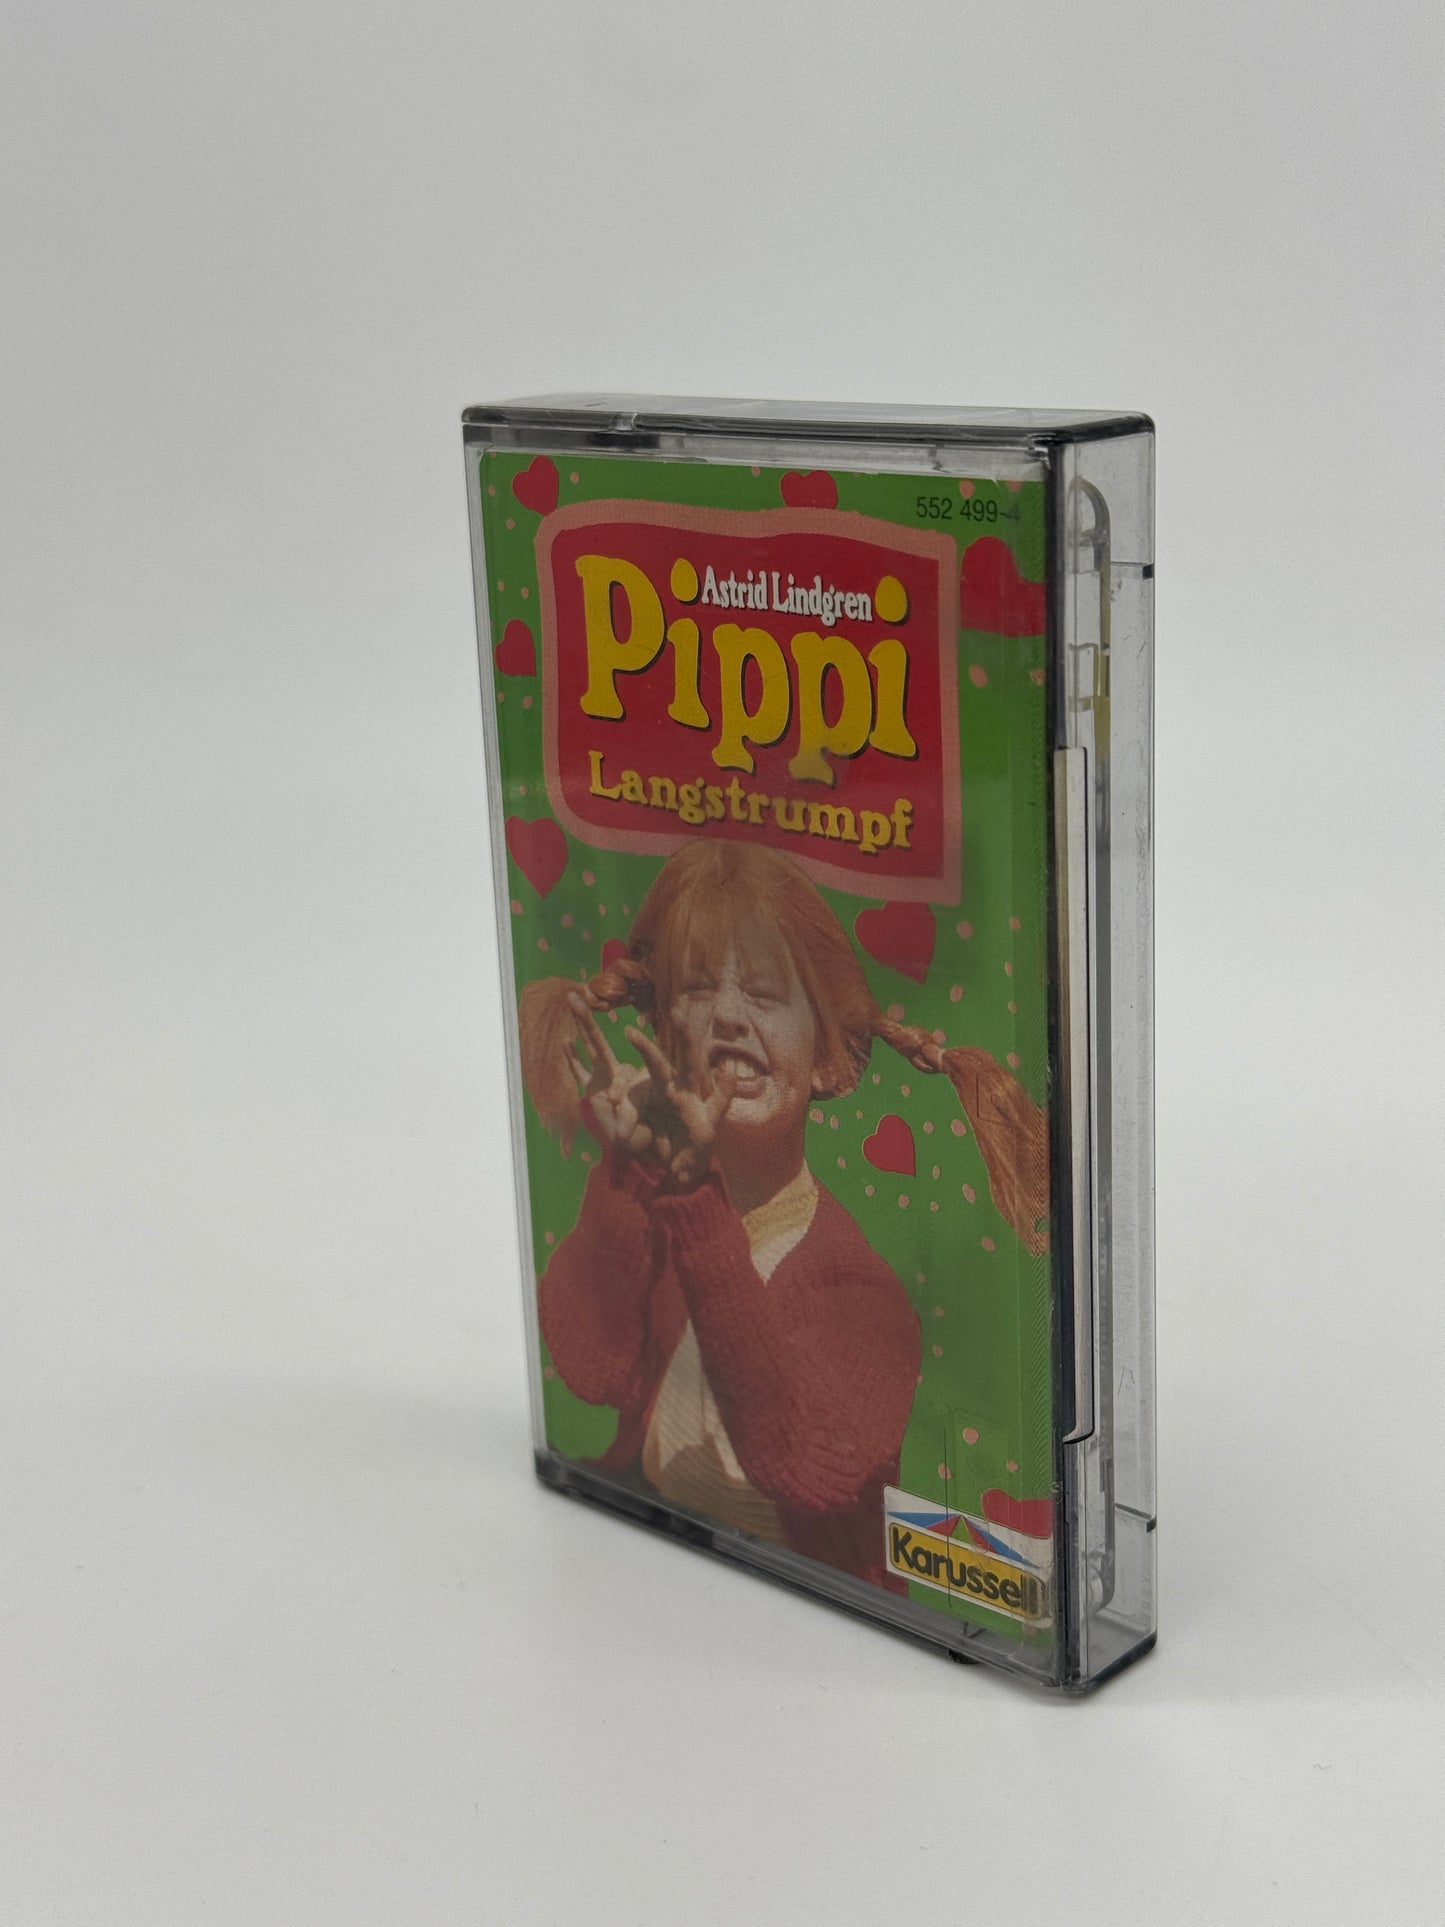 Kopie von Astrid Lindgren "Pippi Langstrumpf" #2 Hörspielkassette nach dem Film (1989)